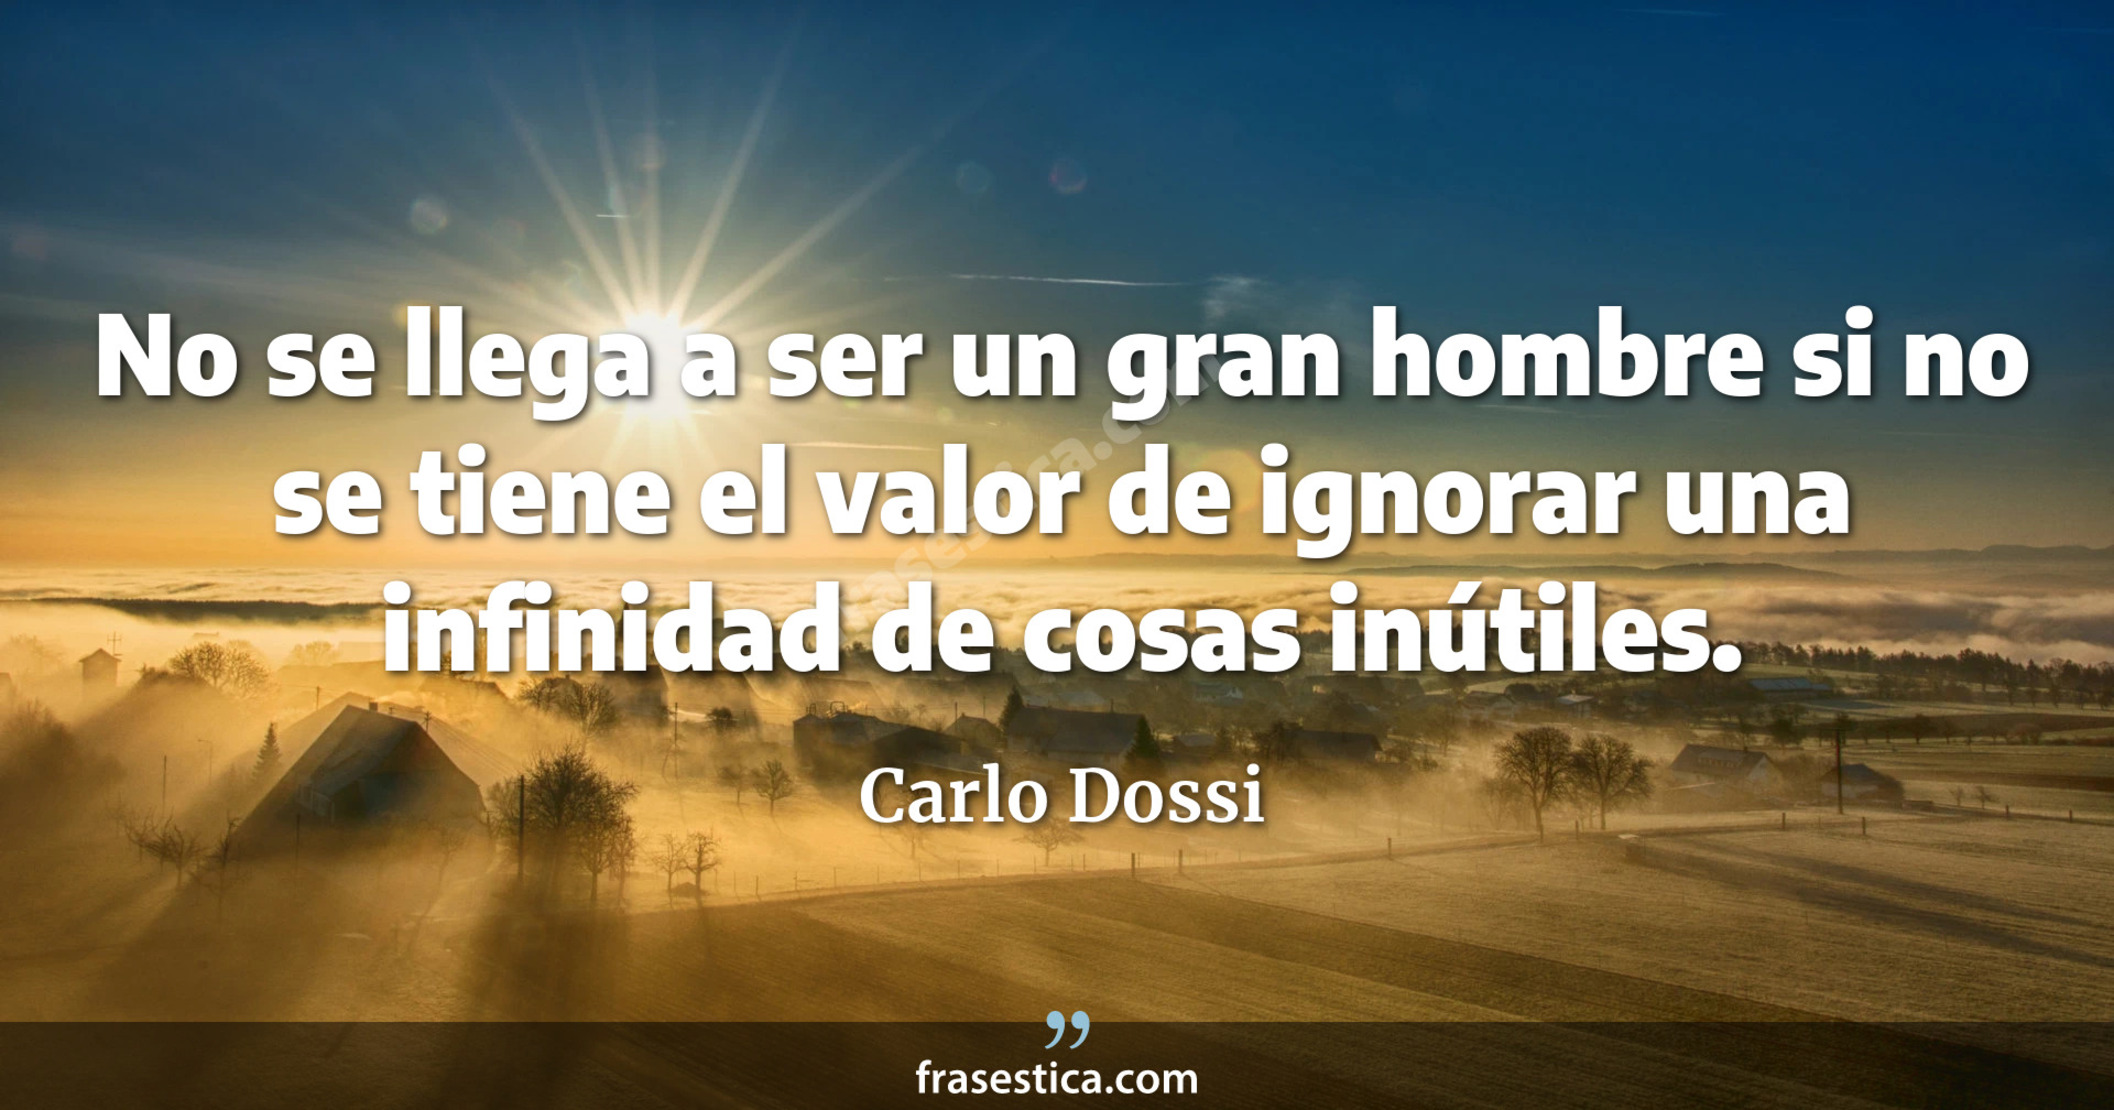 No se llega a ser un gran hombre si no se tiene el valor de ignorar una infinidad de cosas inútiles. - Carlo Dossi